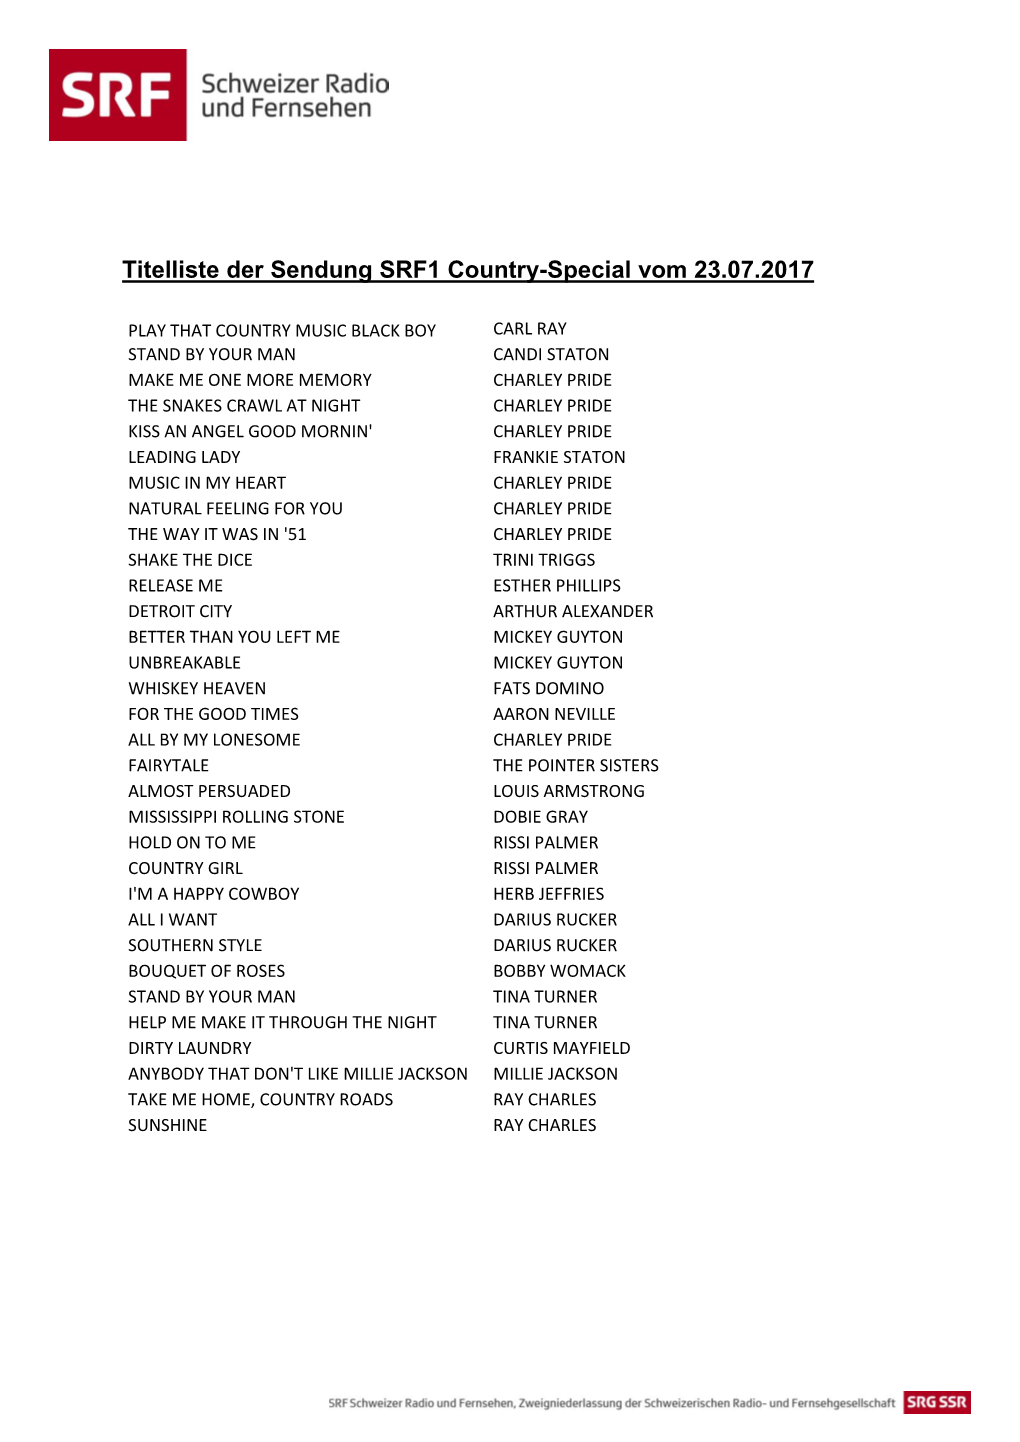 Titelliste Der Sendung SRF1 Country-Special Vom 23.07.2017